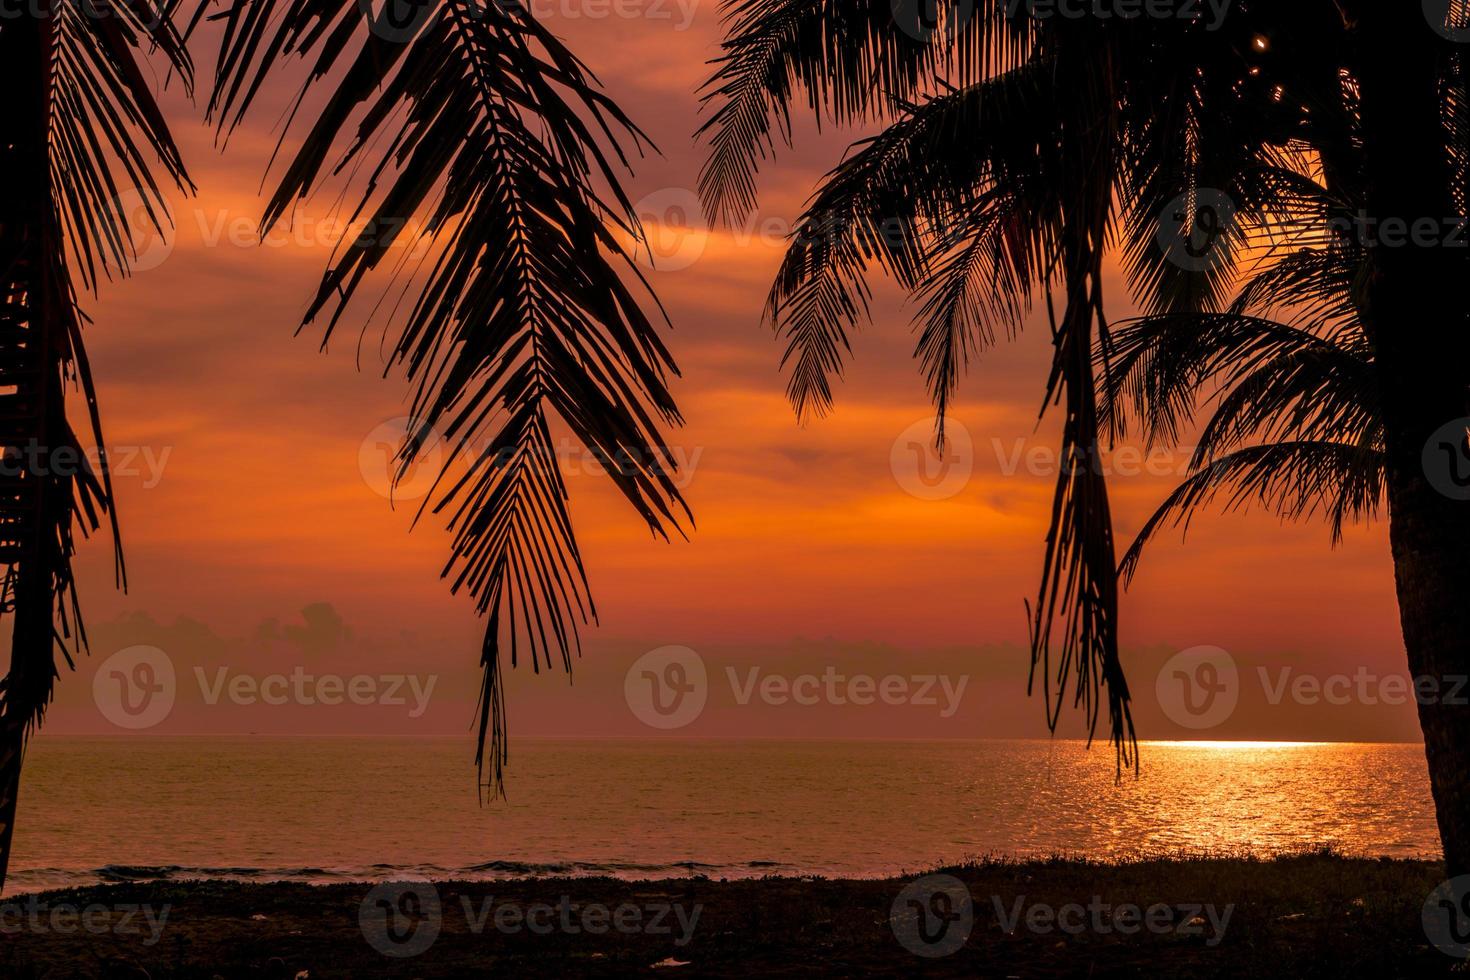 arbres en silhouette paysage tropical photo